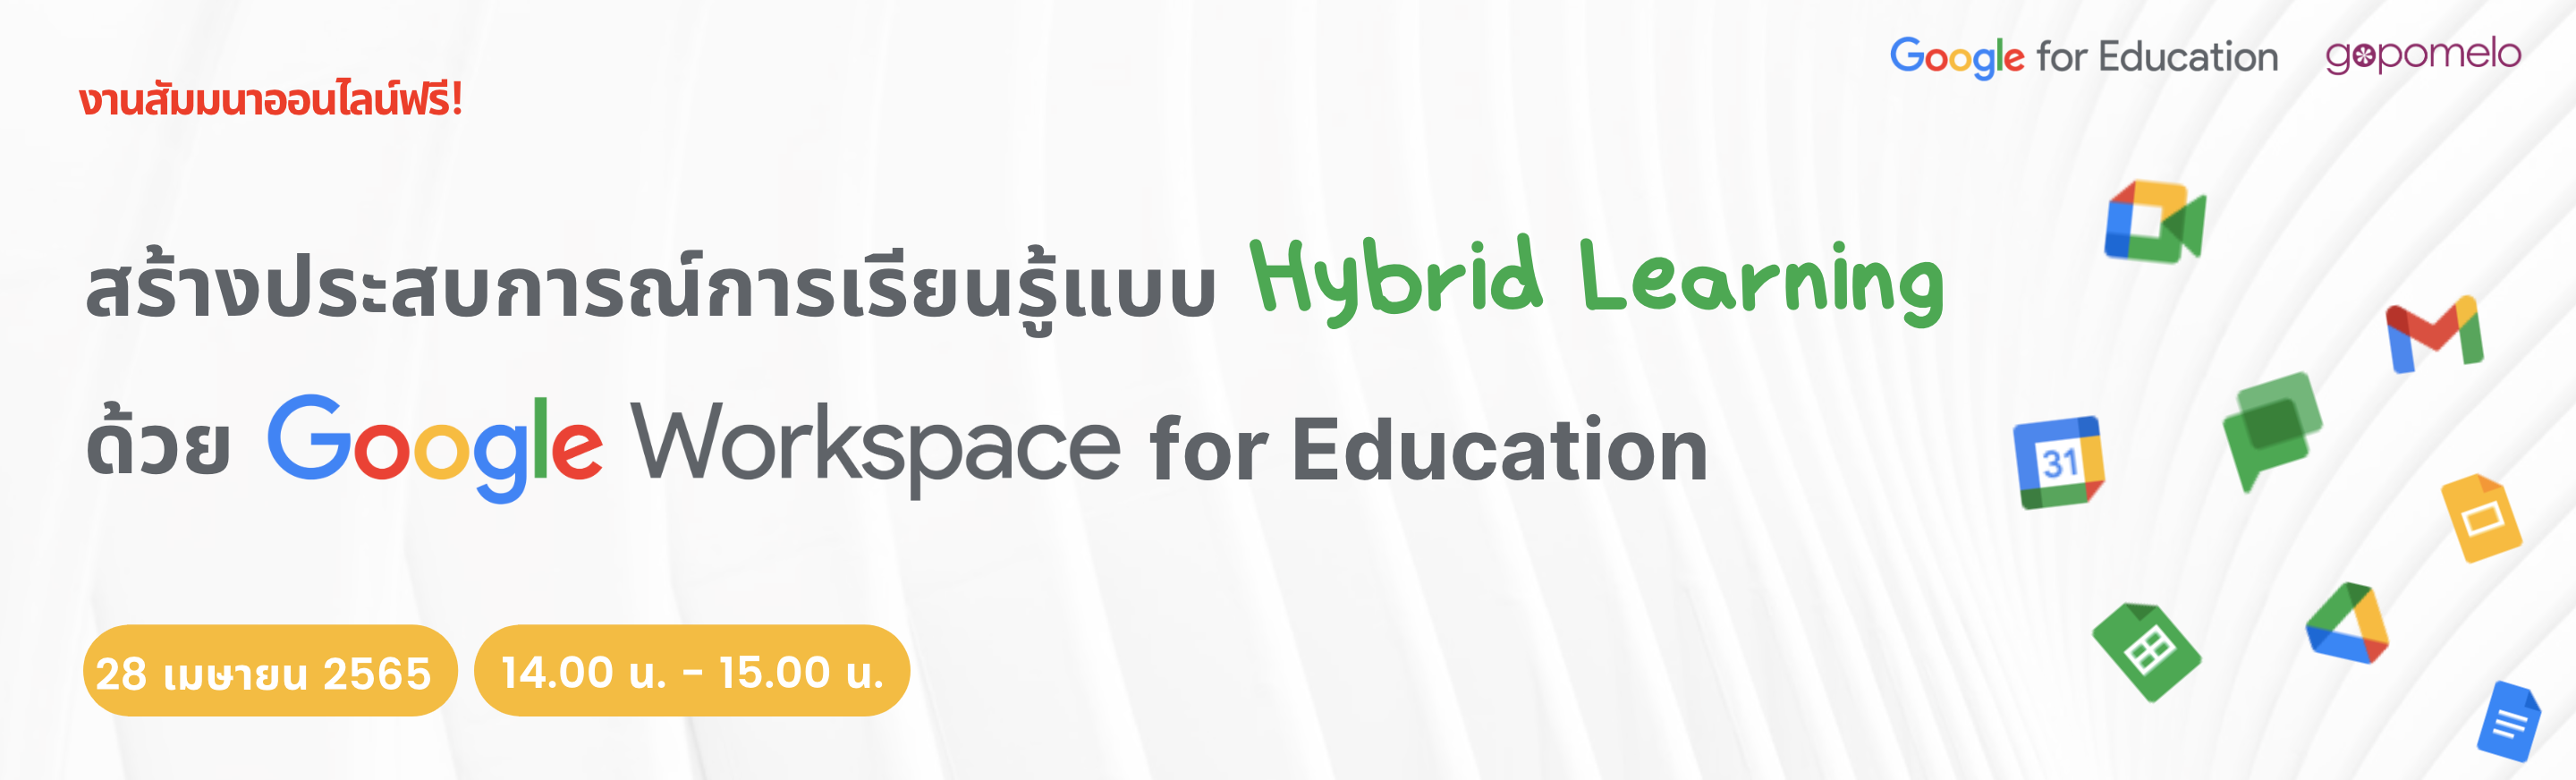 สร้างประสบการณ์การเรียนรู้แบบ Hybrid Learning ด้วย Google Workspace for Education